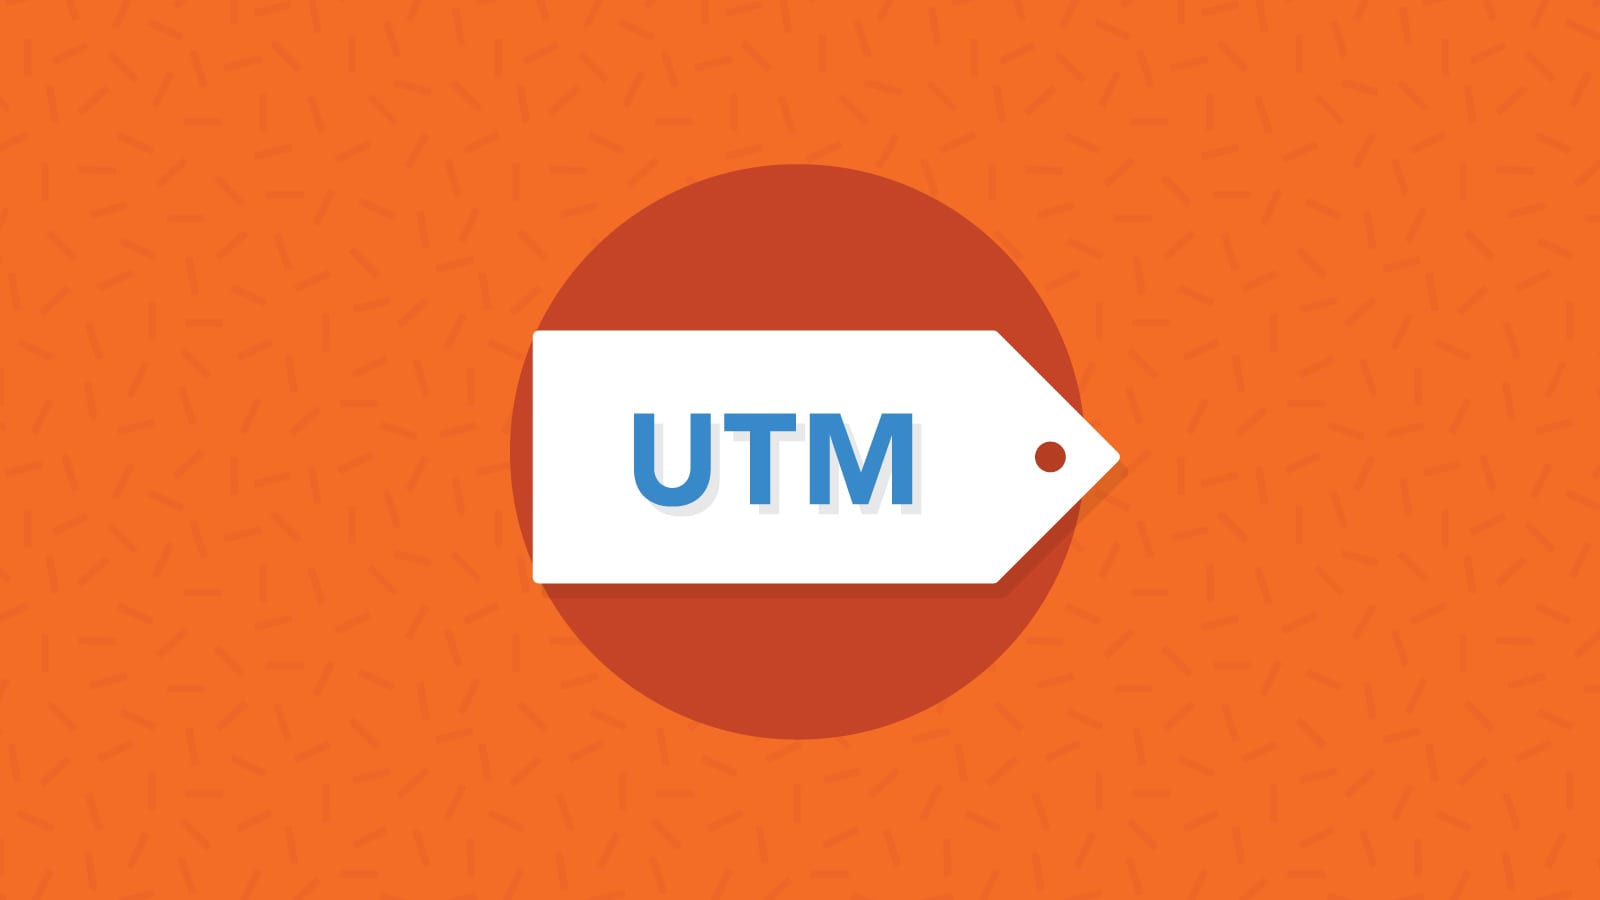 Инструкция, как пользоваться генератором UTM-меток для Tilda